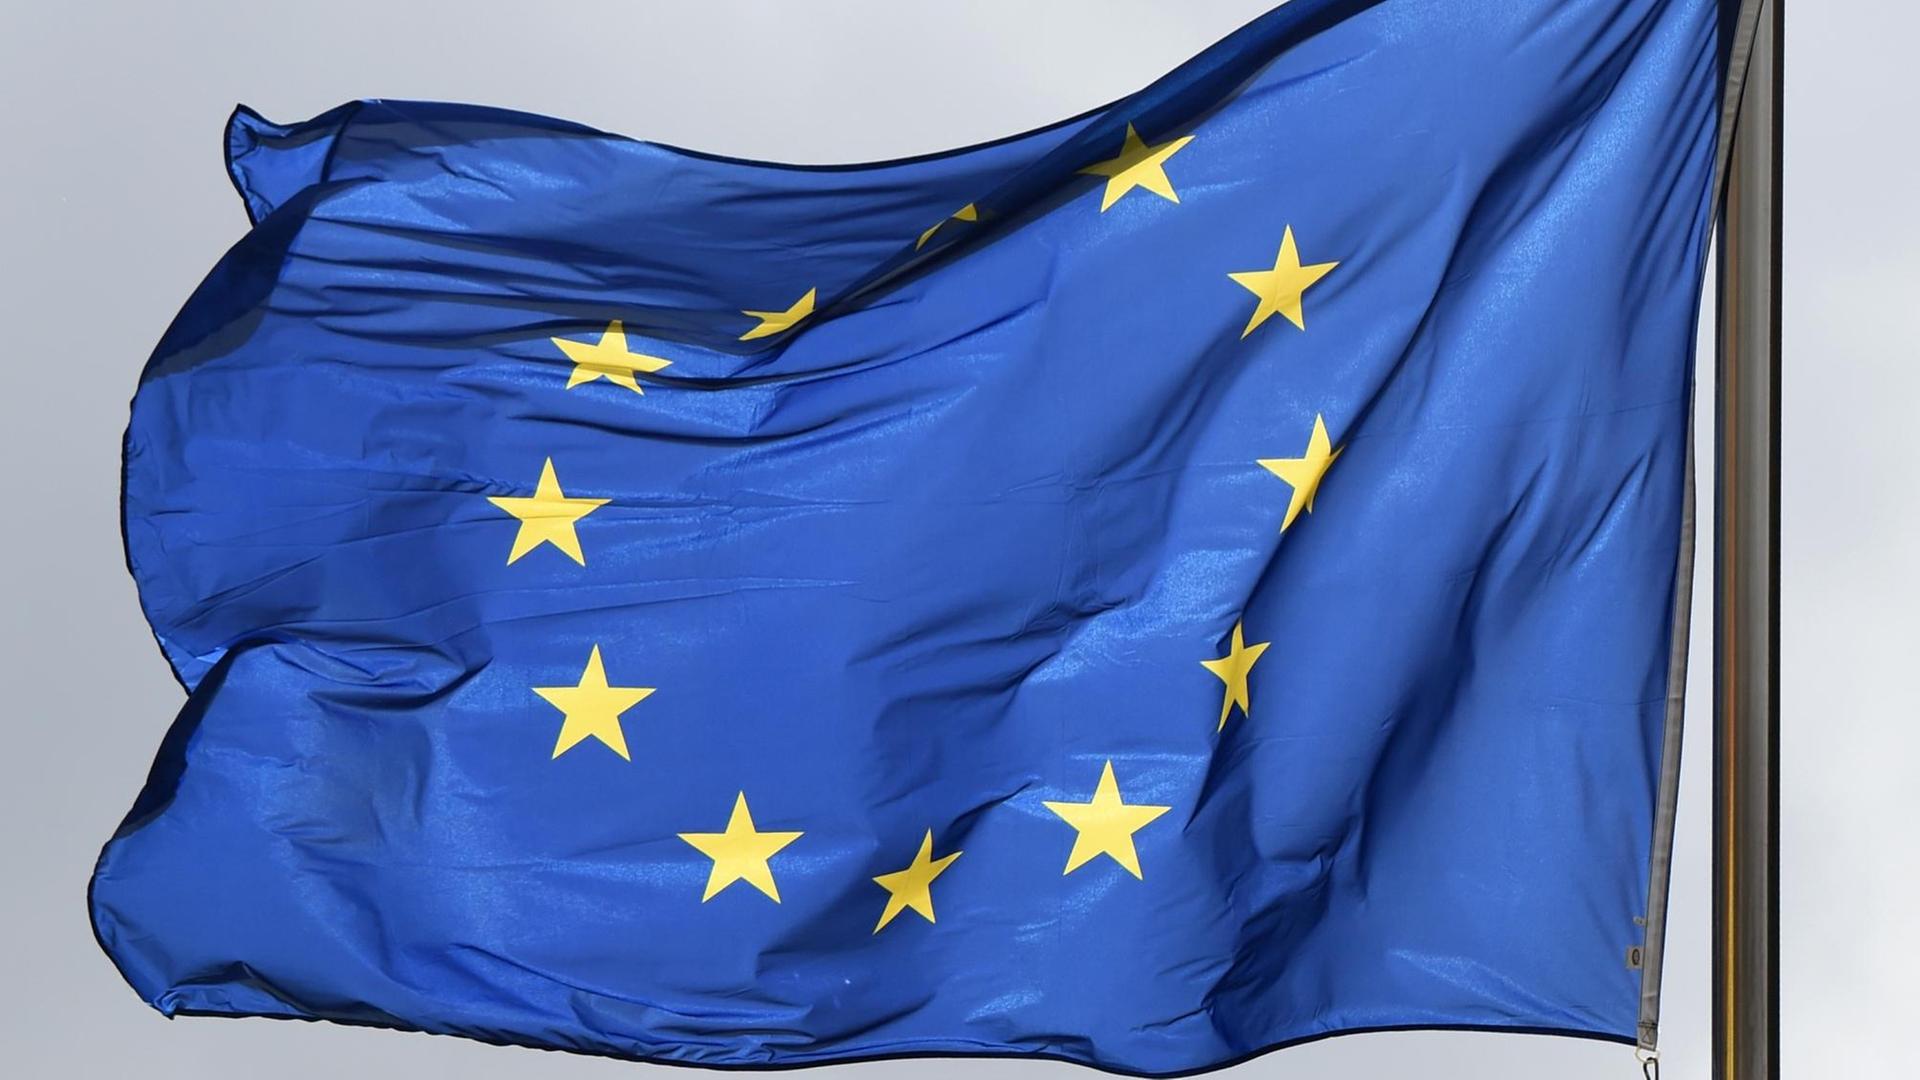 Die blaue Europaflagge mit 12 gelben Sternen im Kreis weht im Wind.